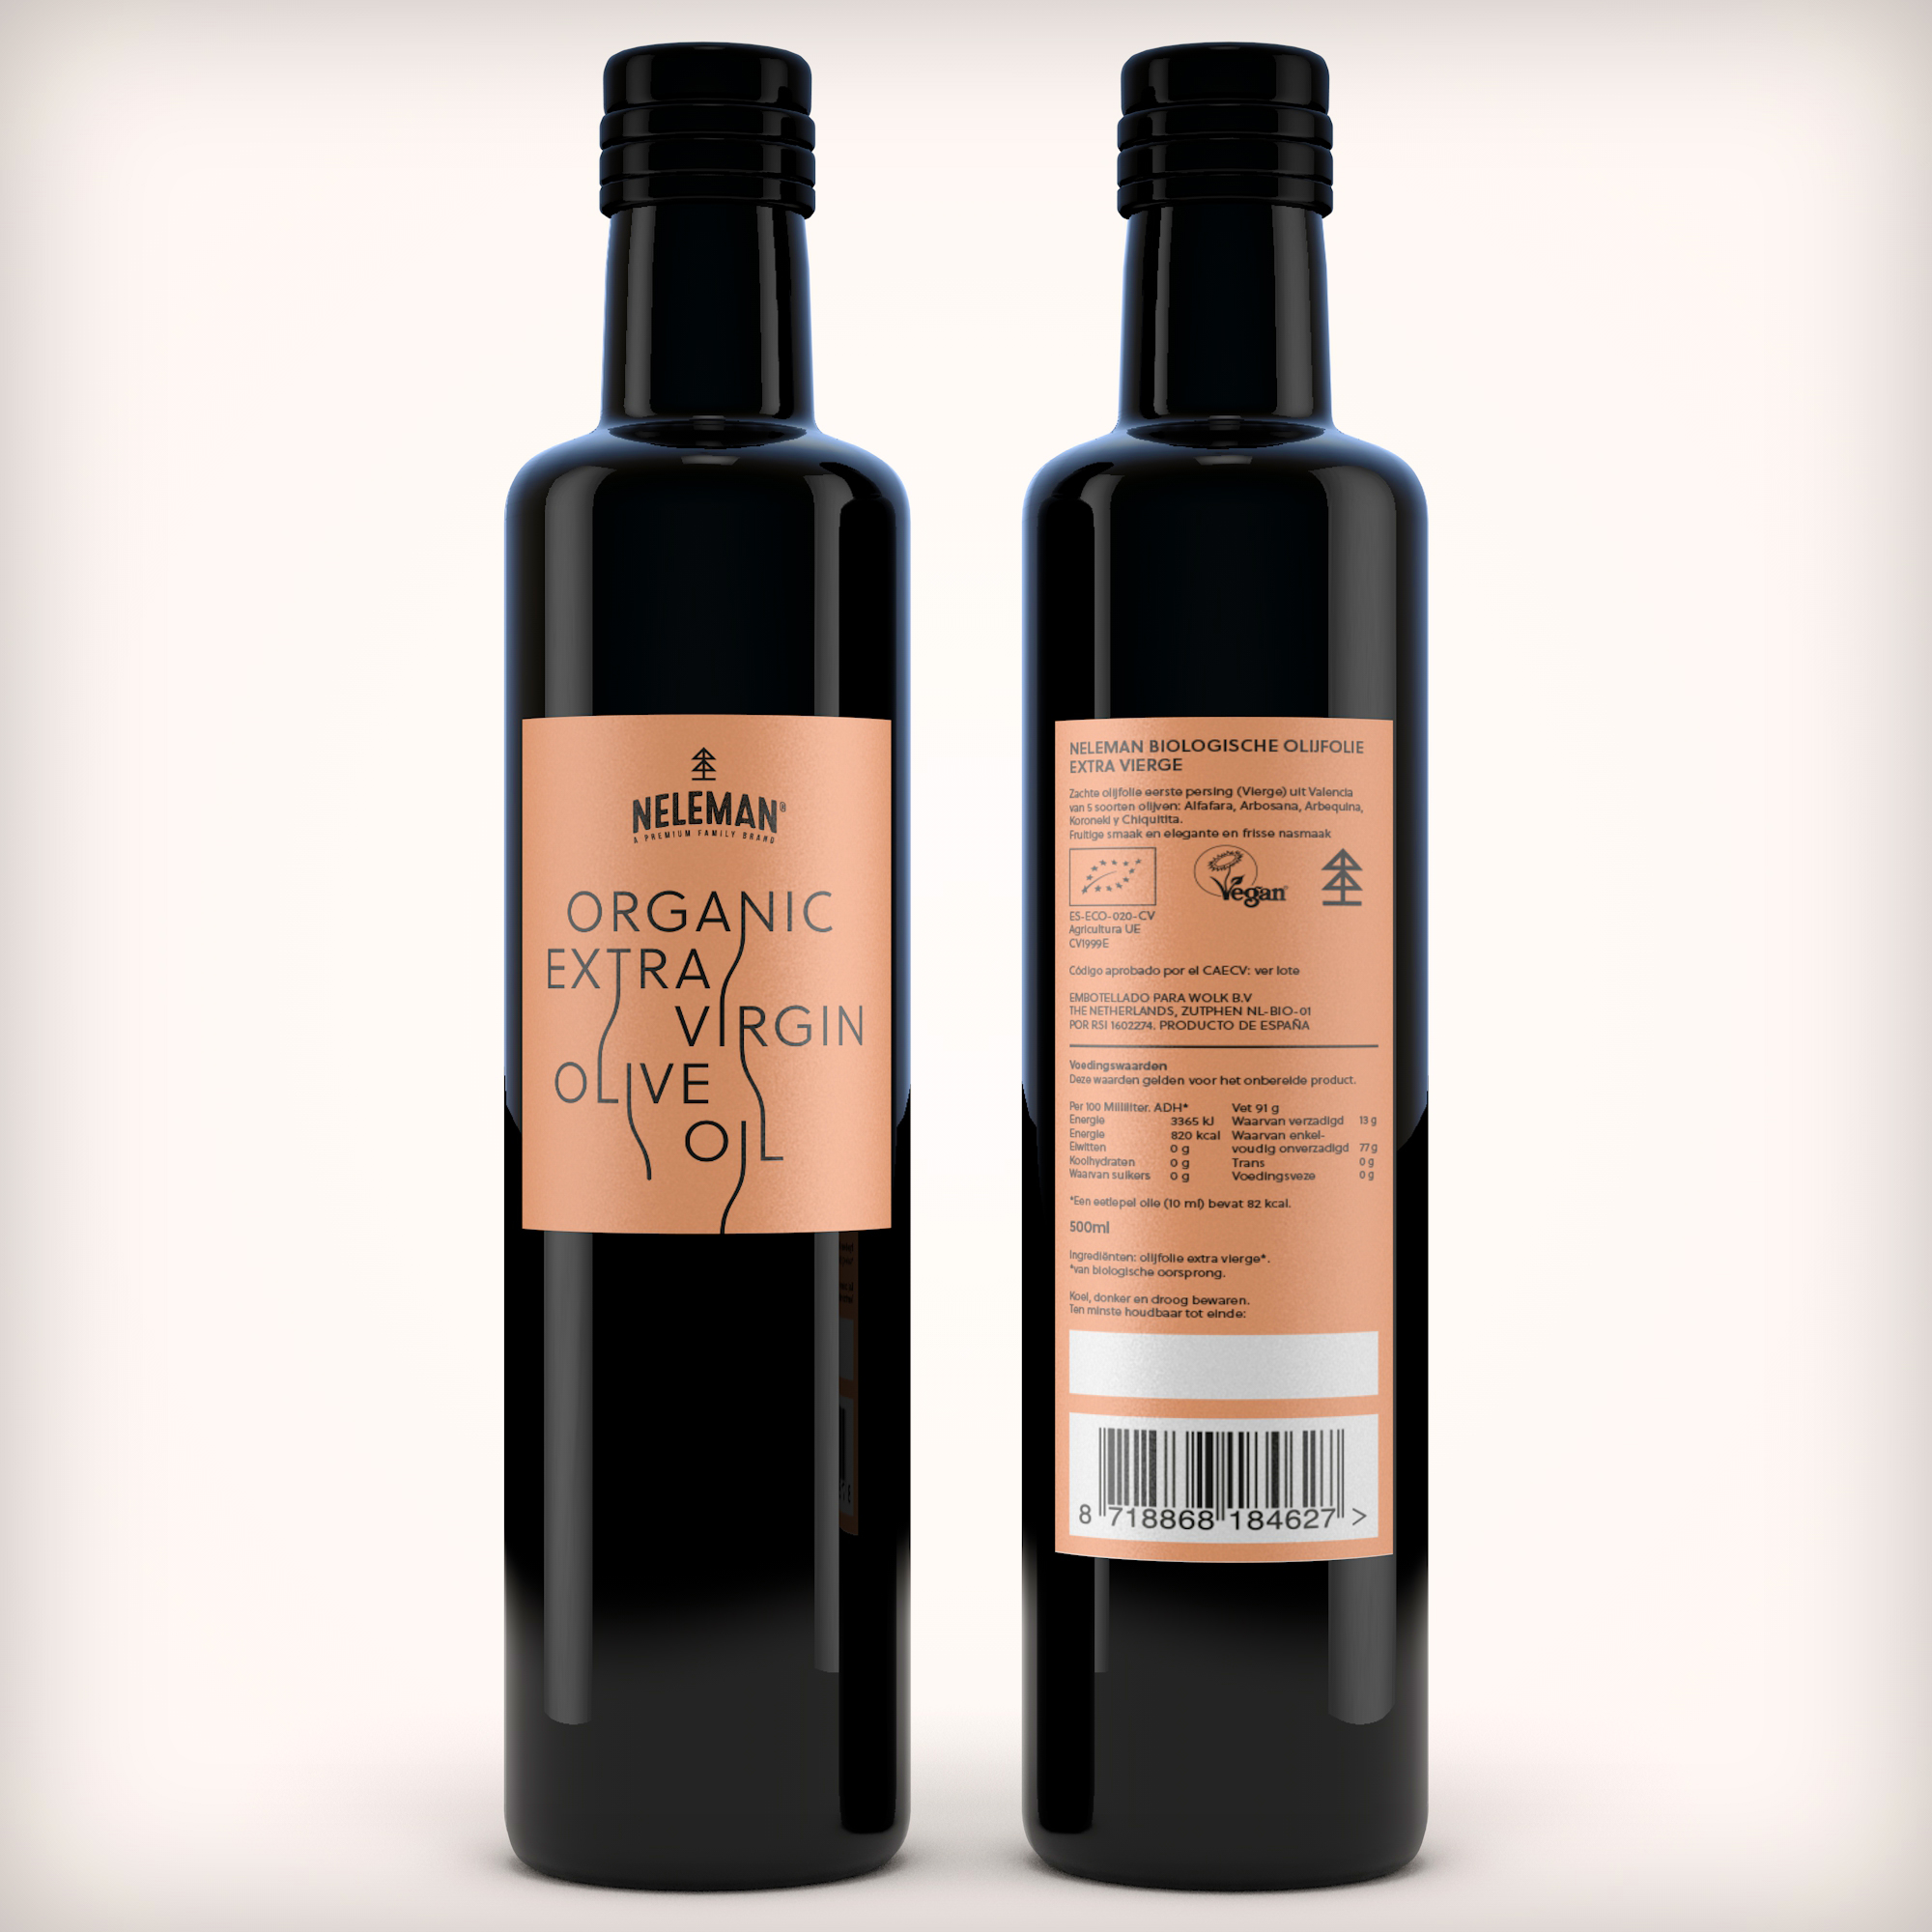 Fles etiket voor Neleman organic extra virgin olive oil